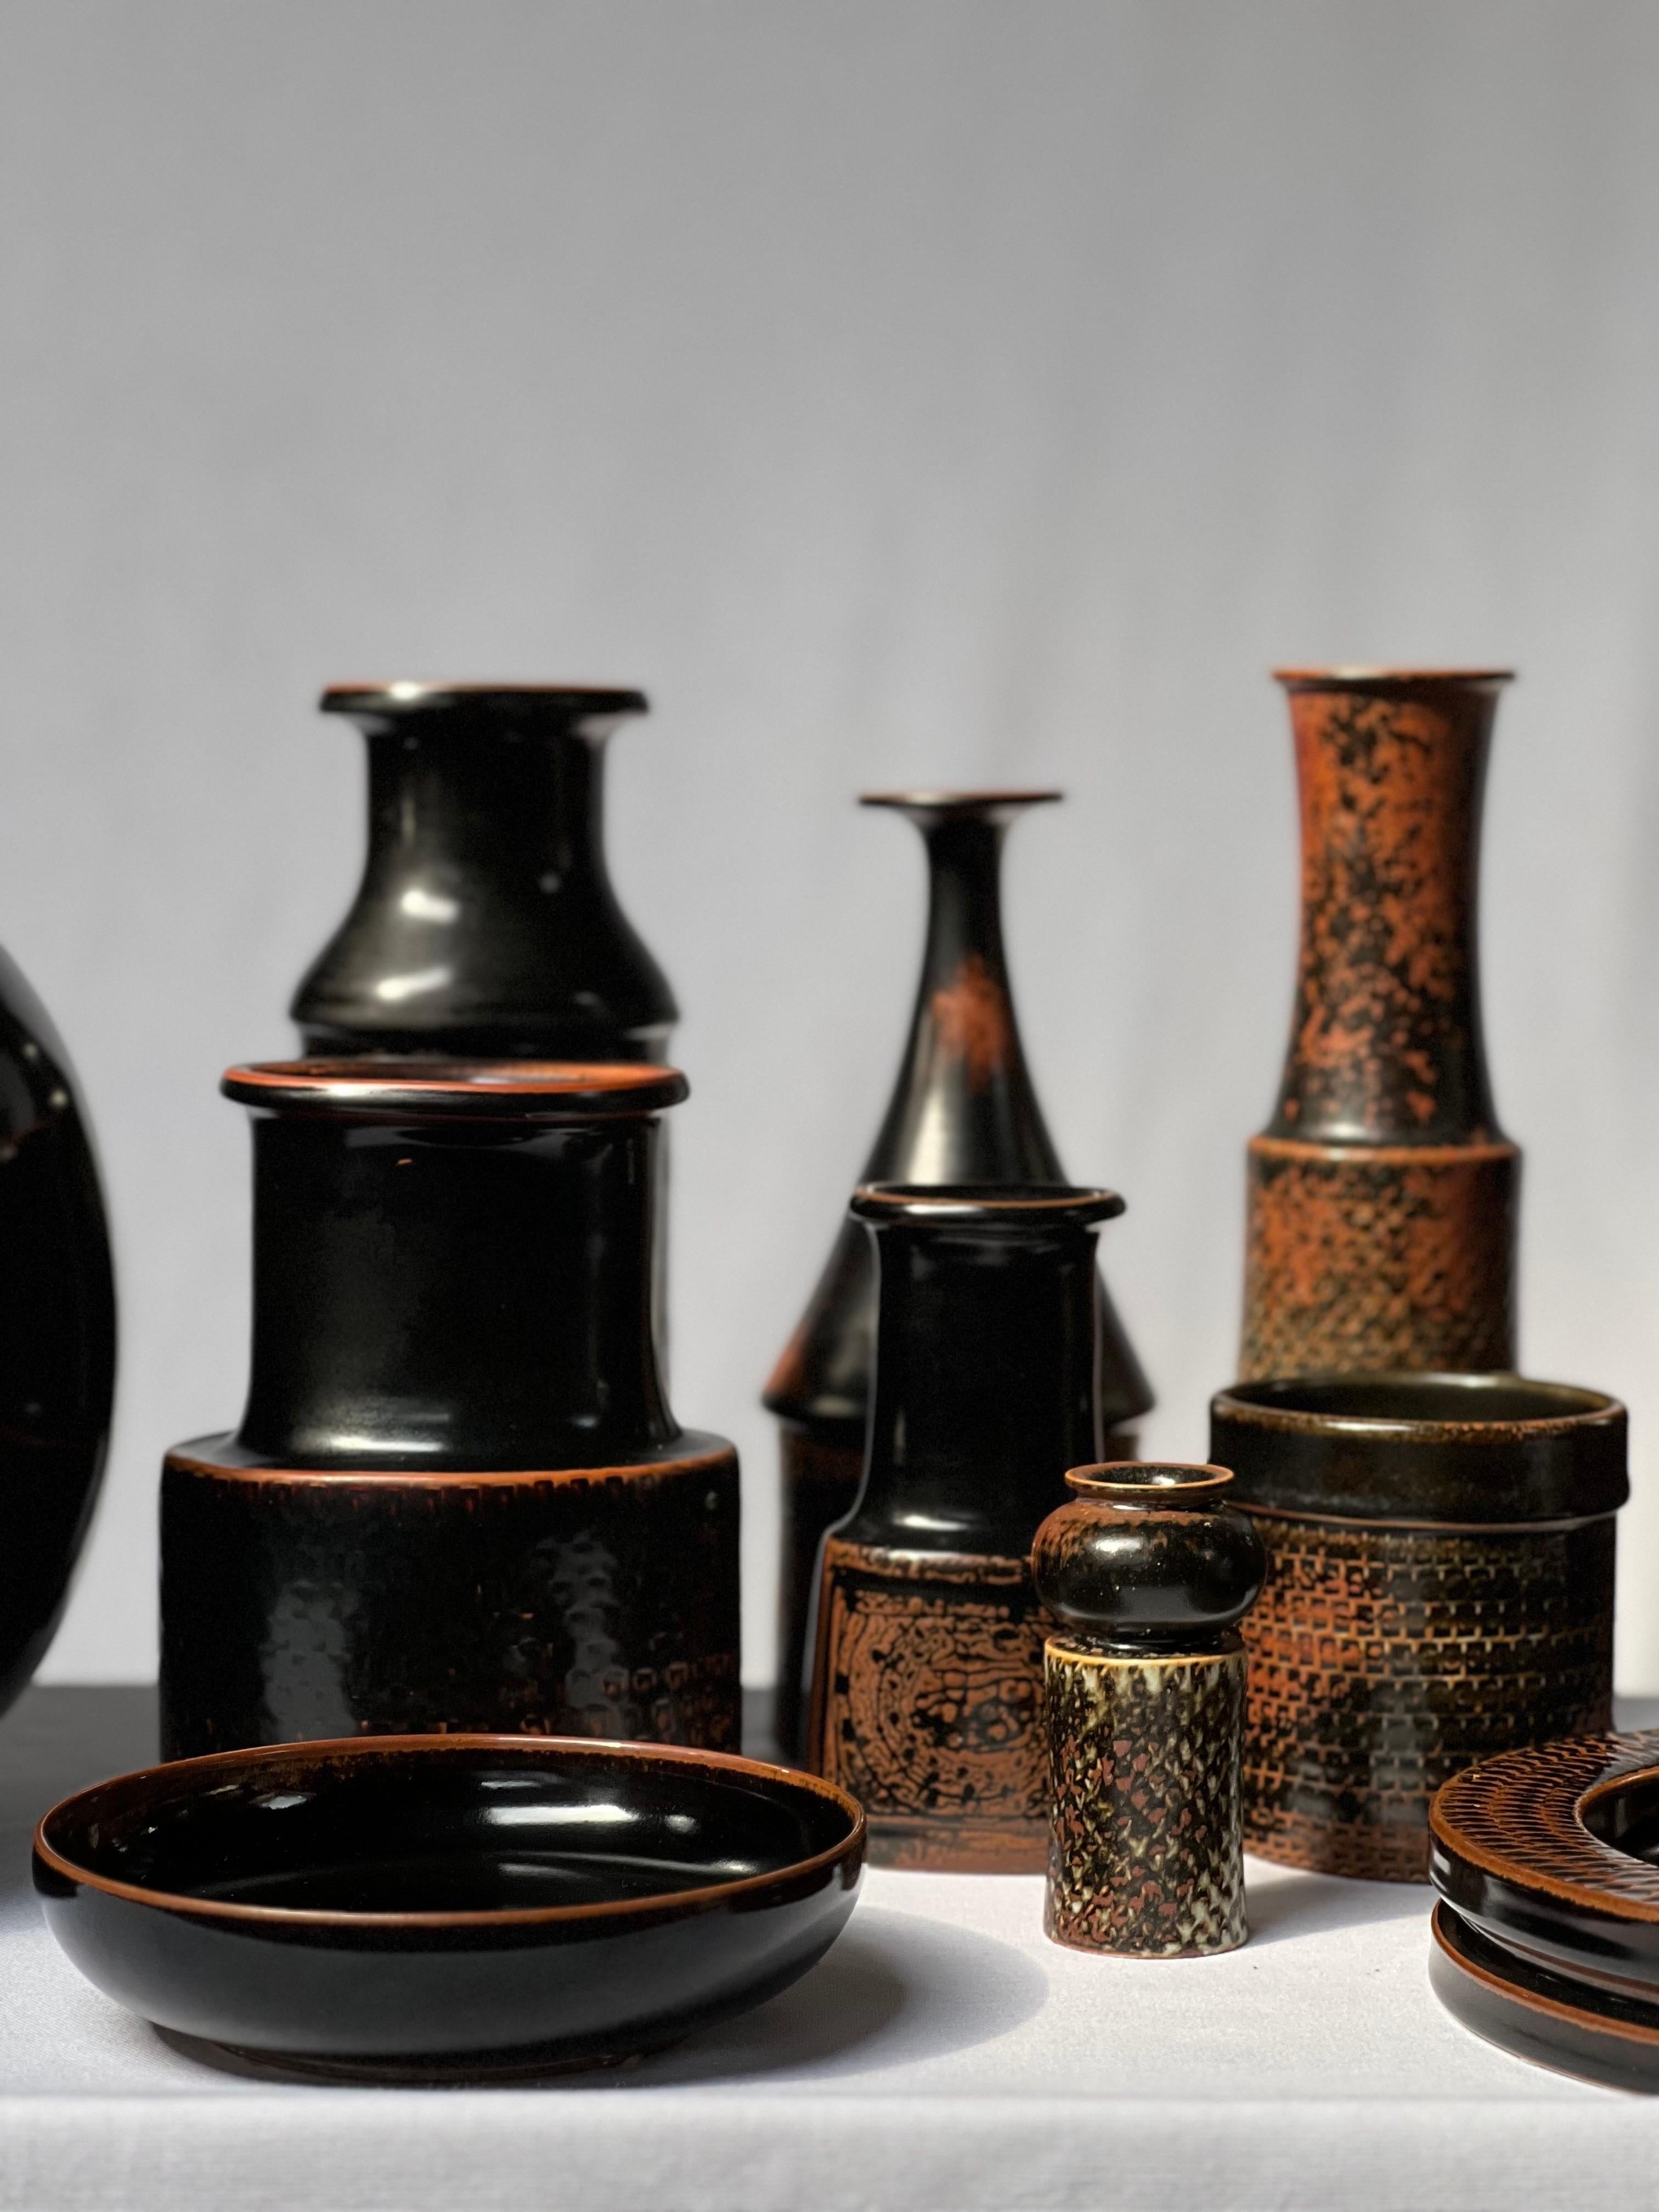 Stig Lindberg Unique Vase in black Glaze Tenmoku Made by Hand Sweden 1964 For Sale 1